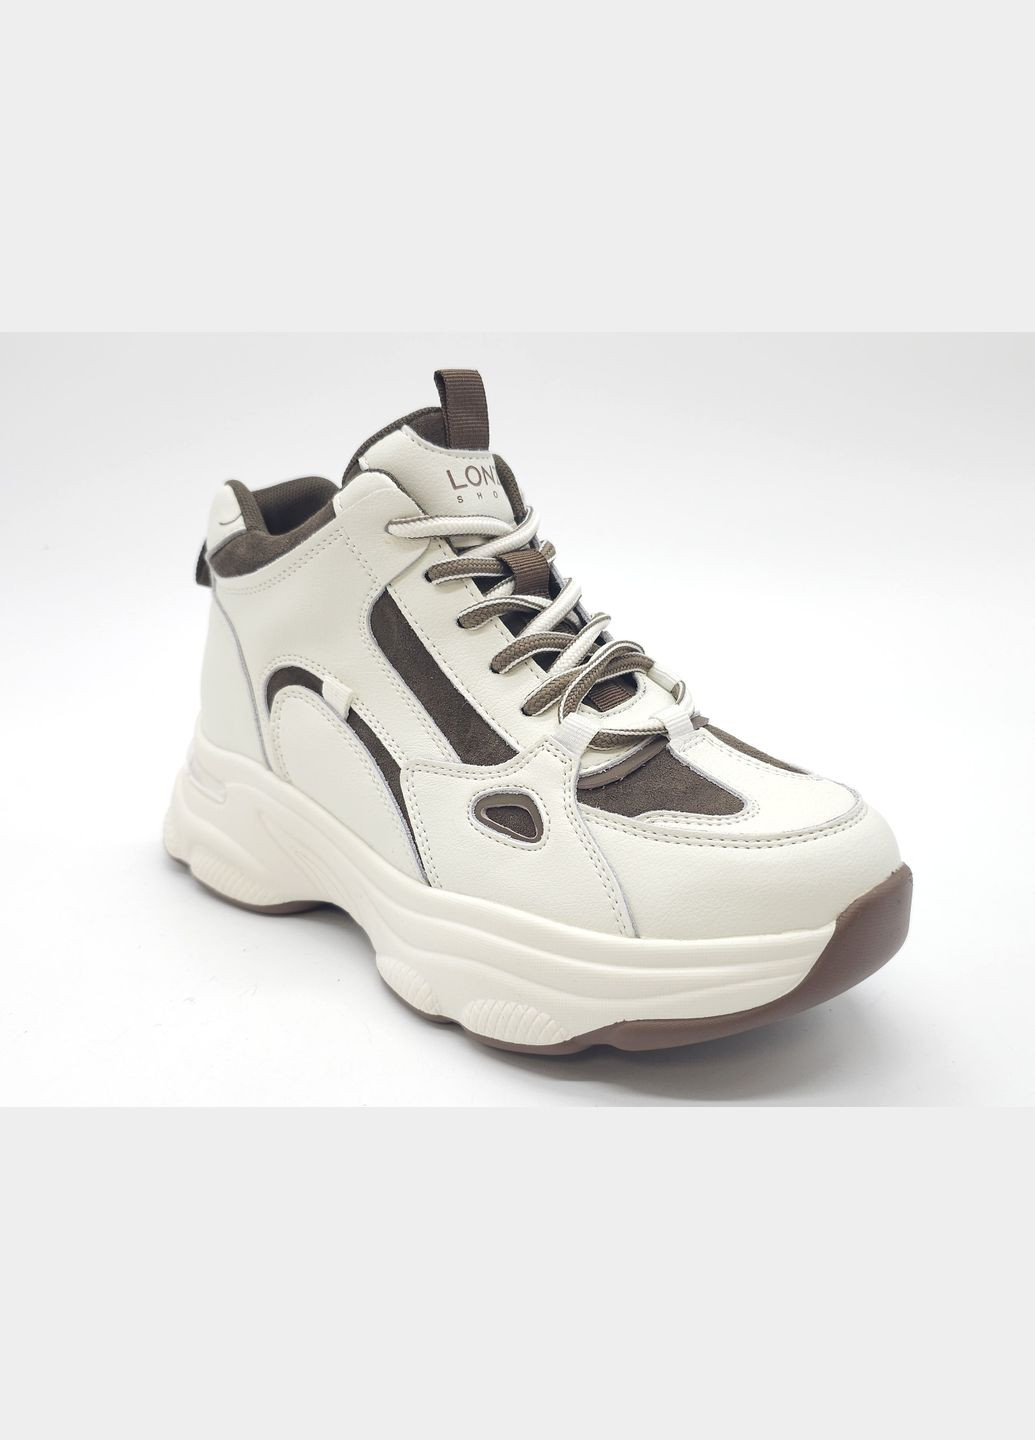 Белые всесезонные женские кроссовки белые кожаные l-11-47 23 см(р) Lonza